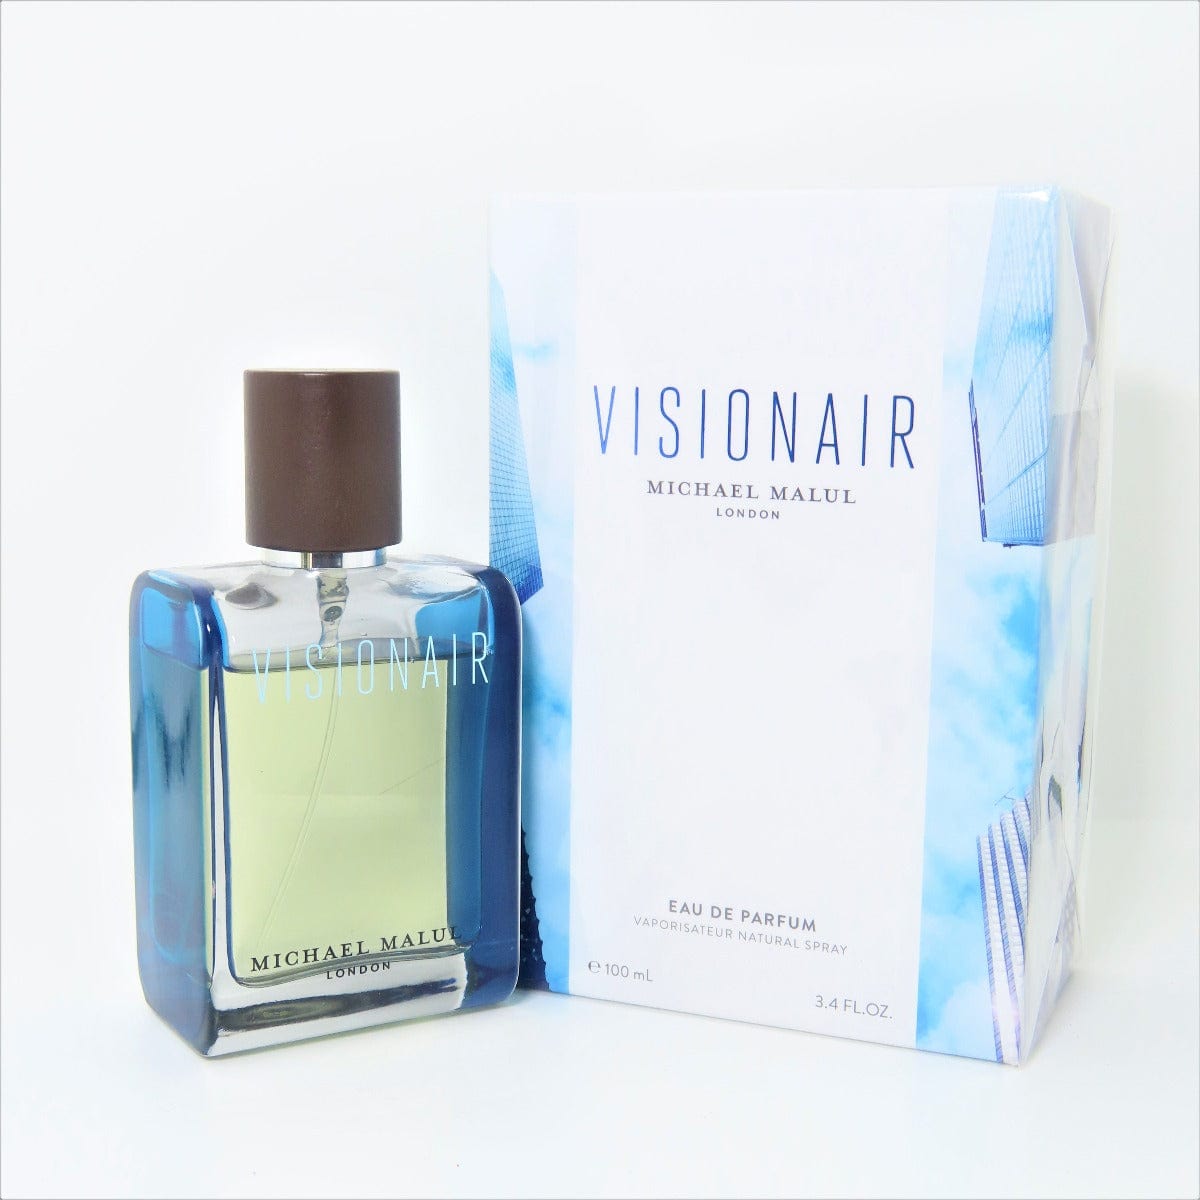 Michael Malul London Perfumes 100ml -Visionair For Men